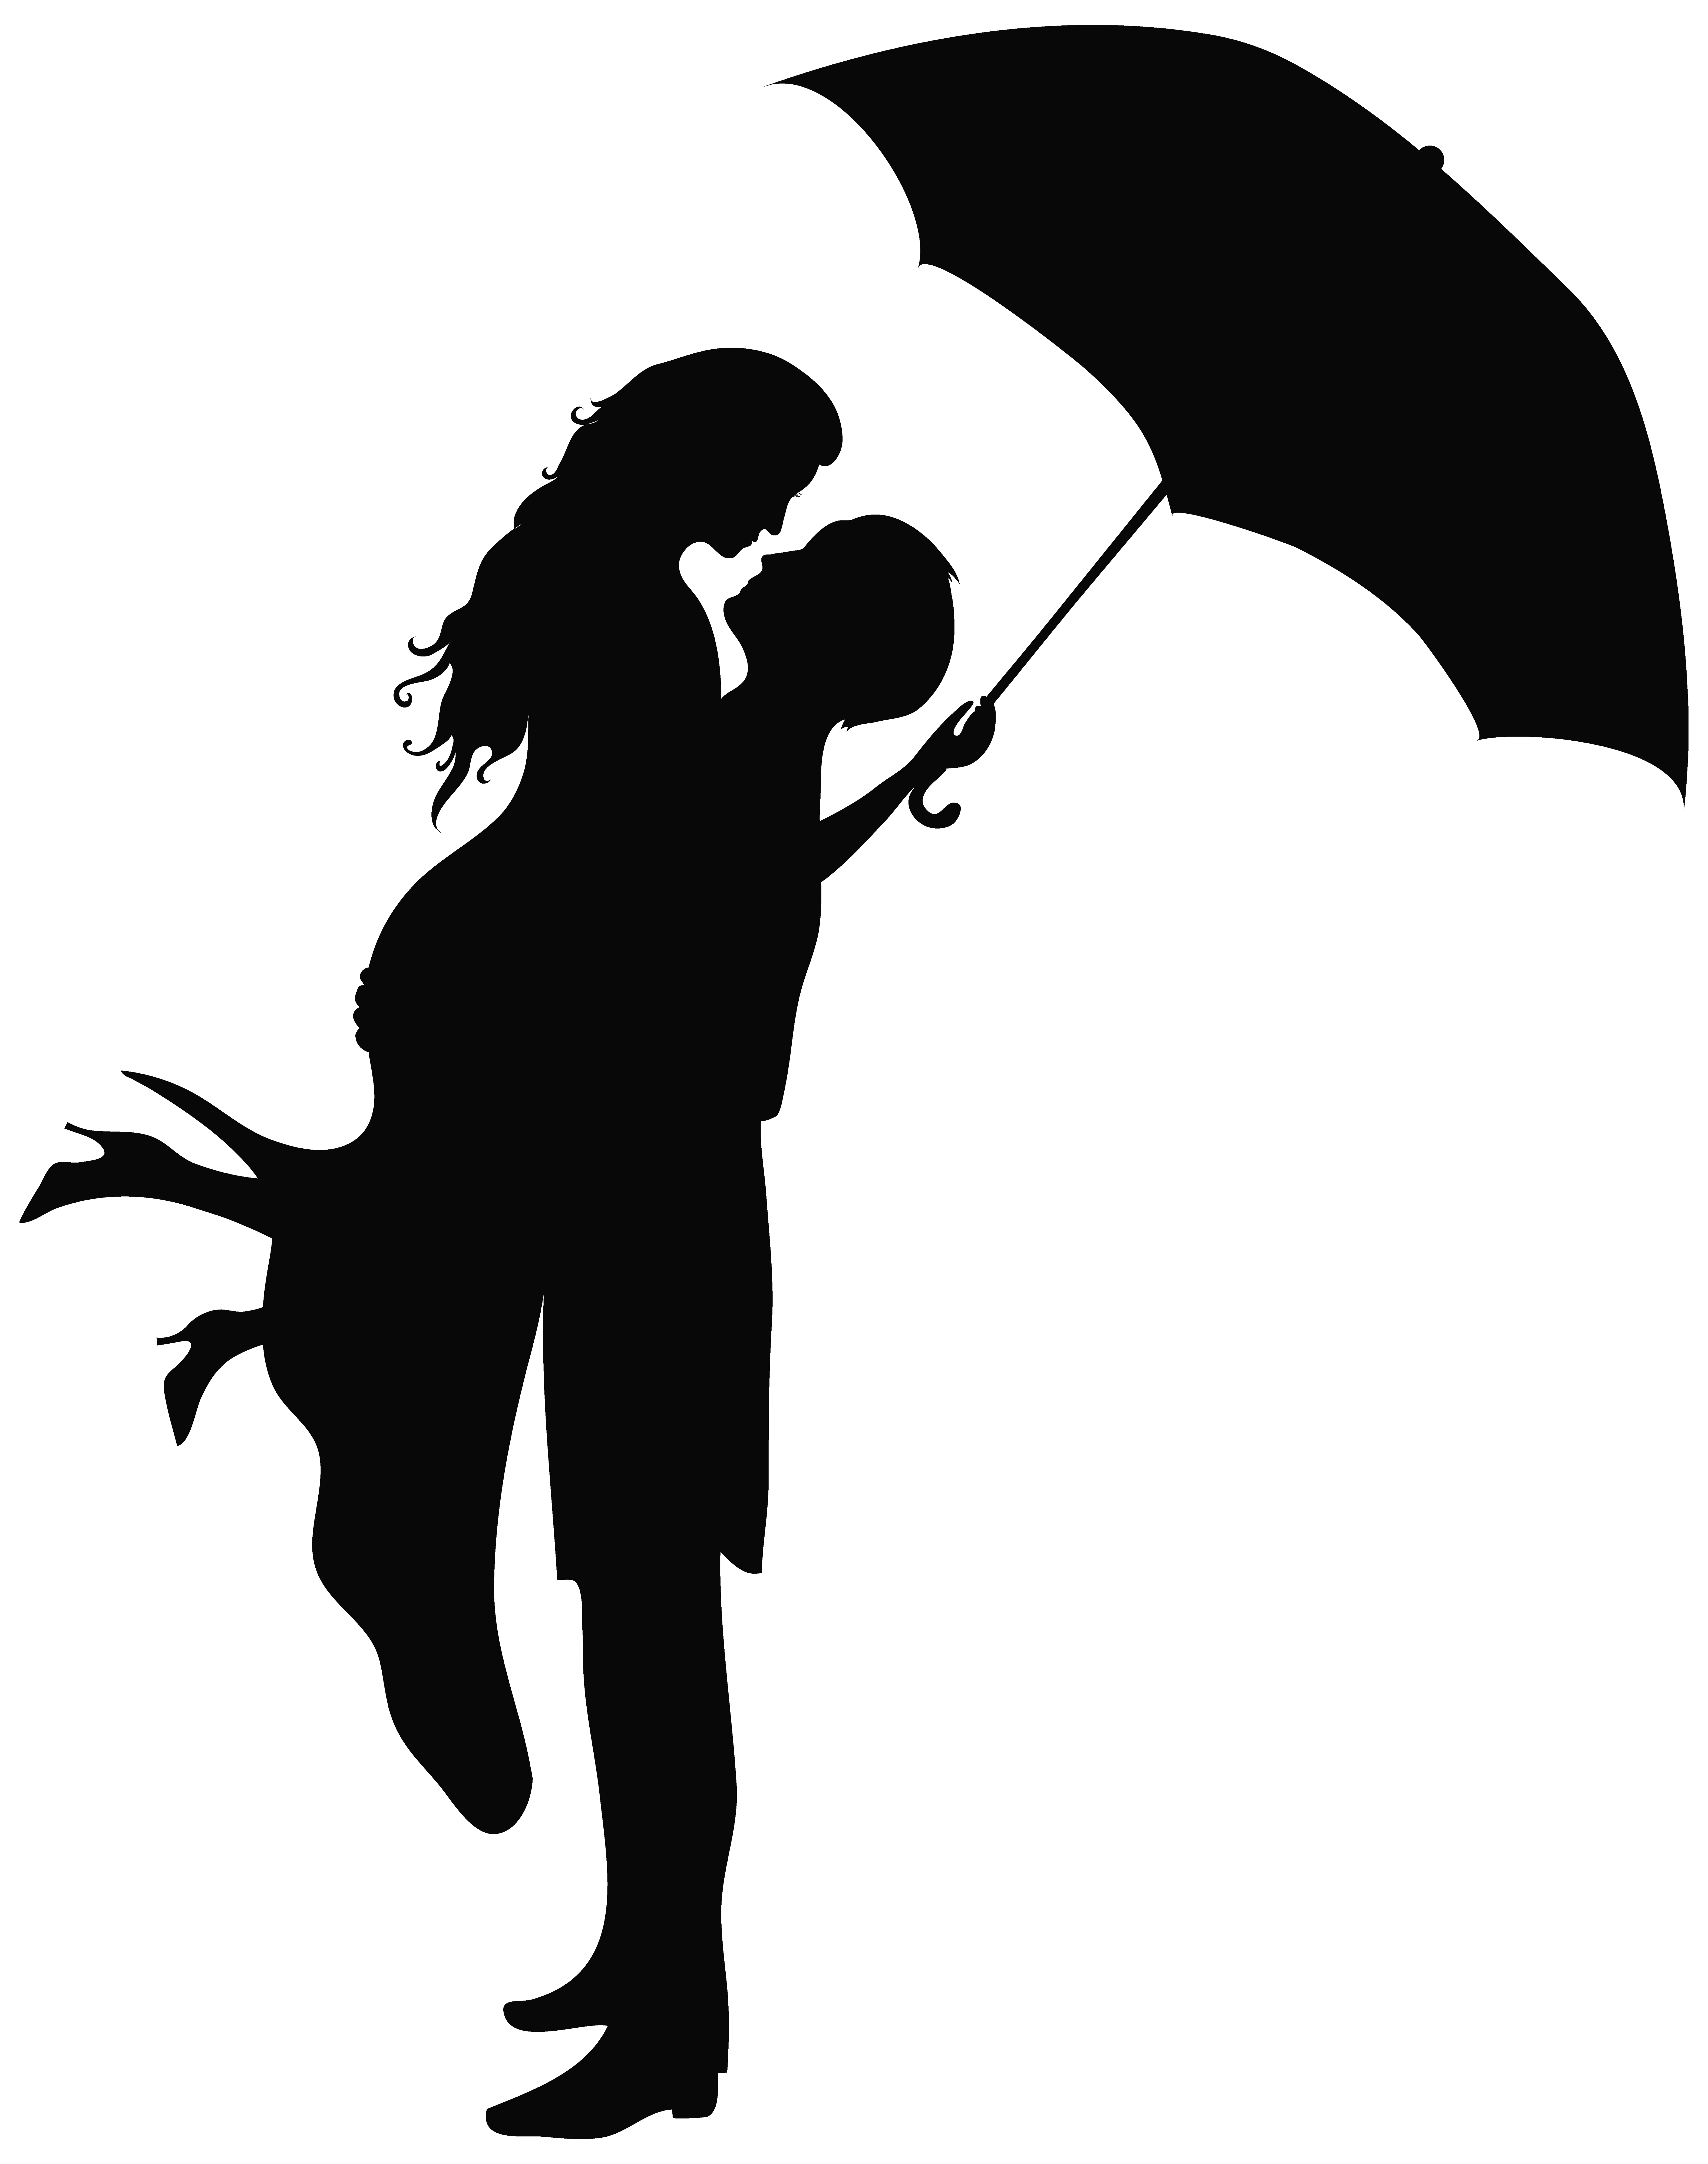 Romantic Couple Silhouettes PNG Clip Art Image.